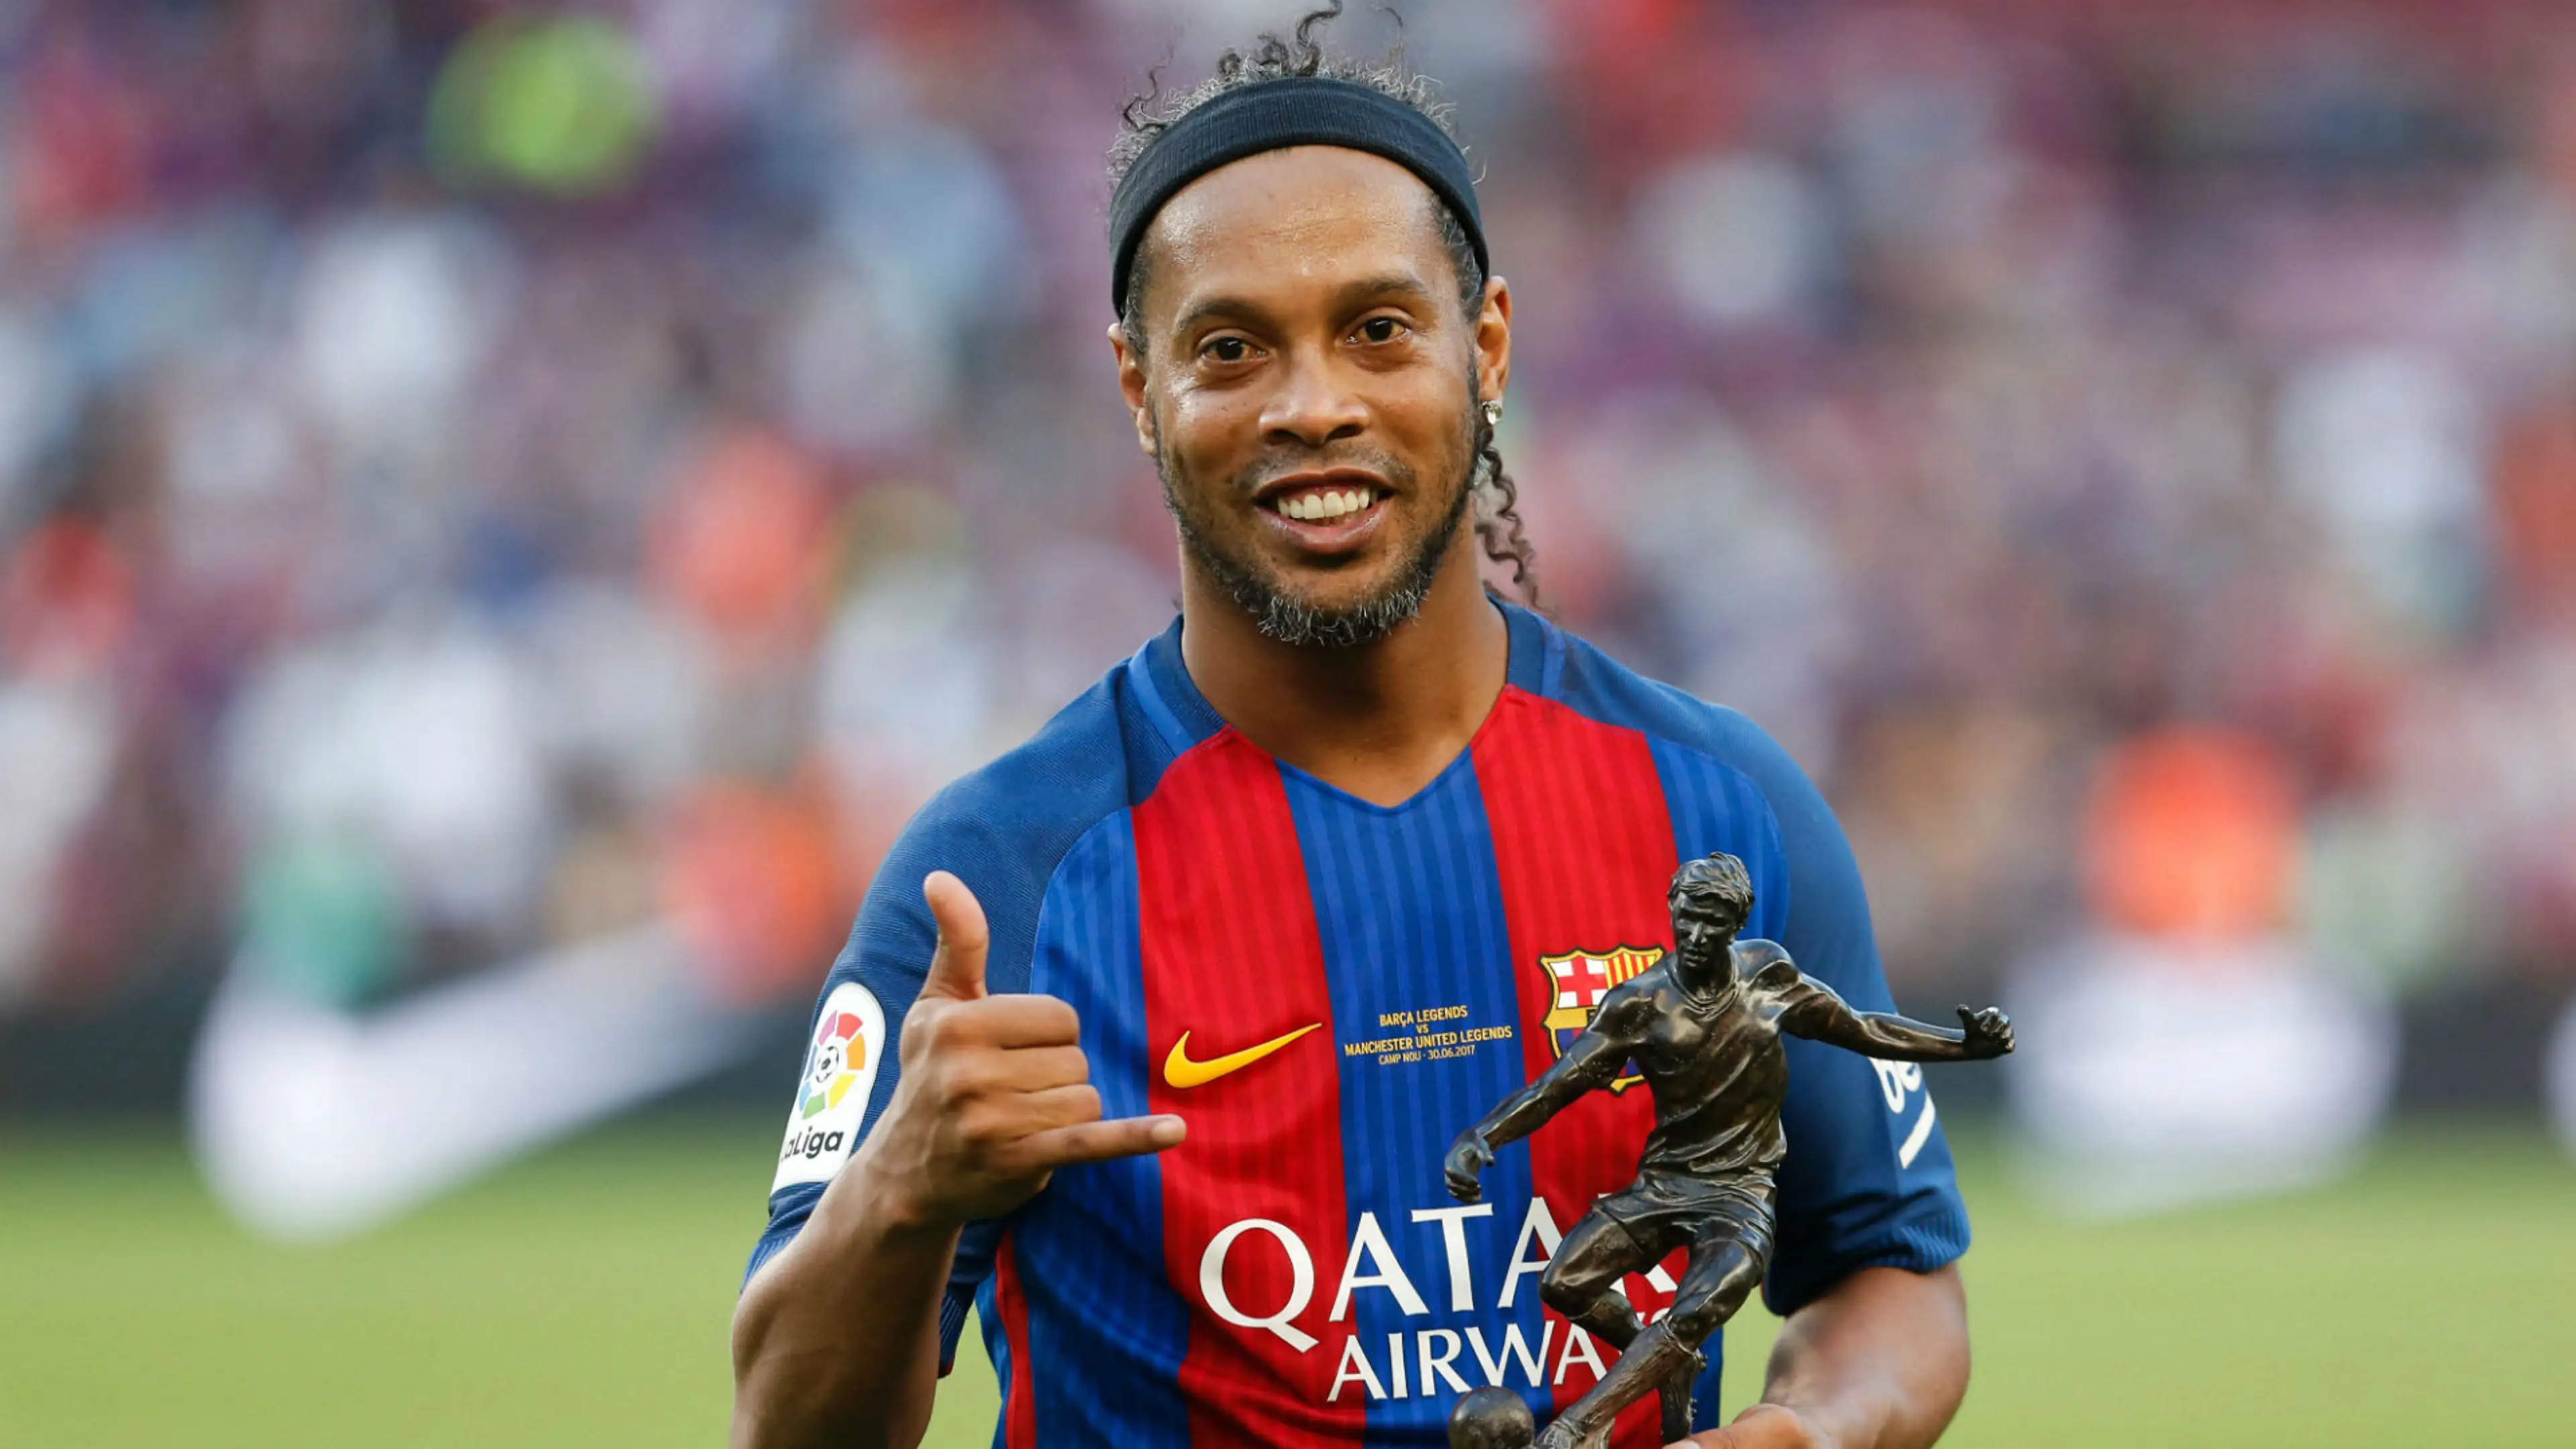 FourFourTwo Names Ronaldinho Best Footballer Of 2000s